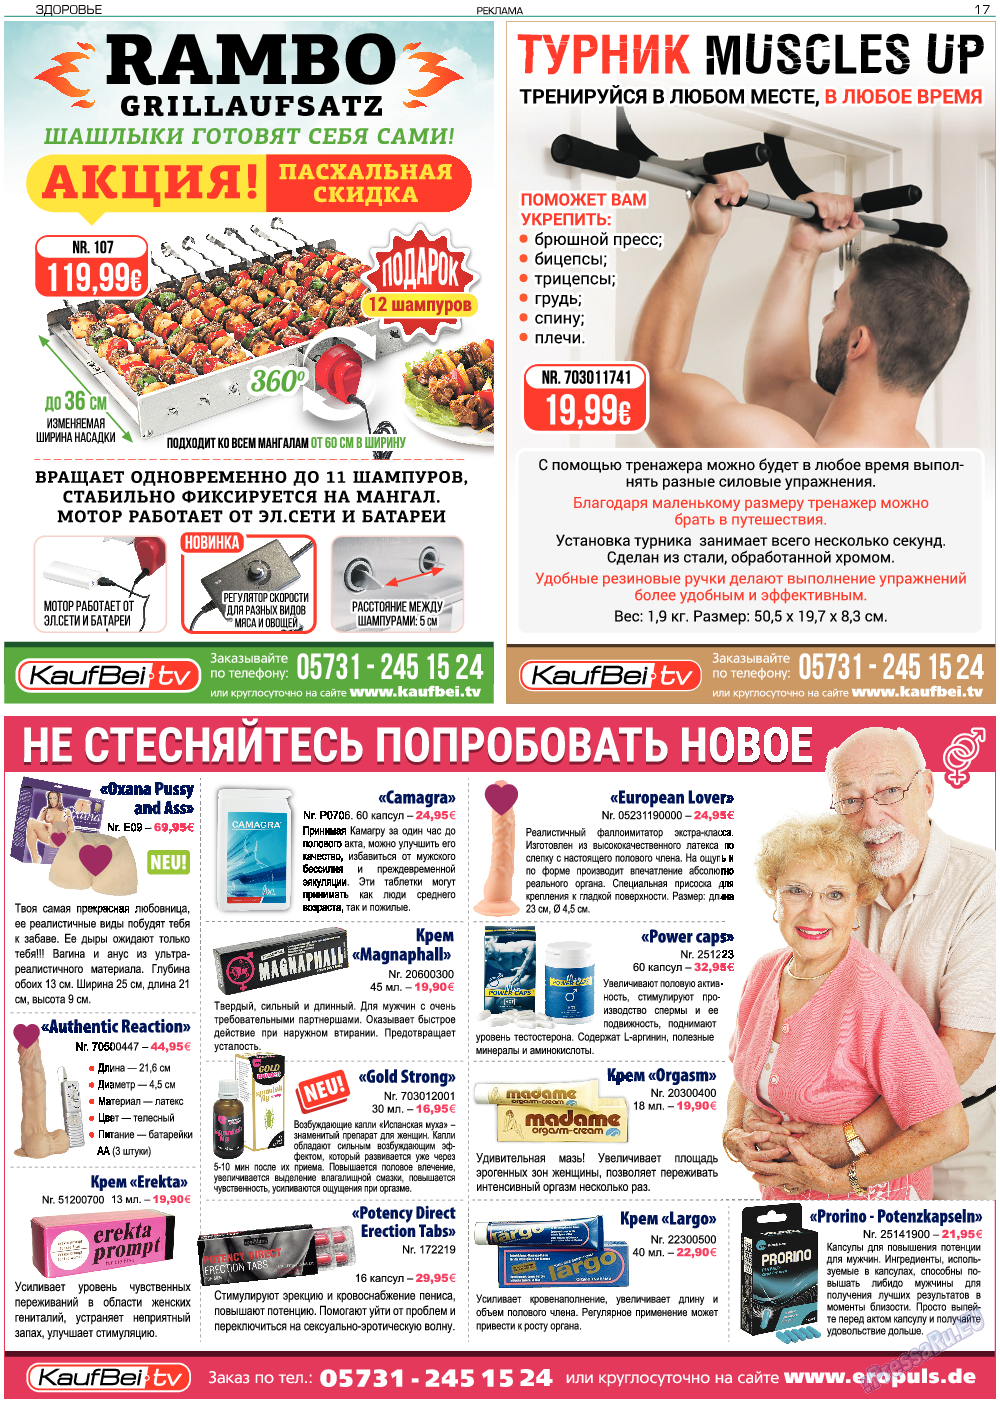 Здоровье, газета. 2018 №4 стр.17